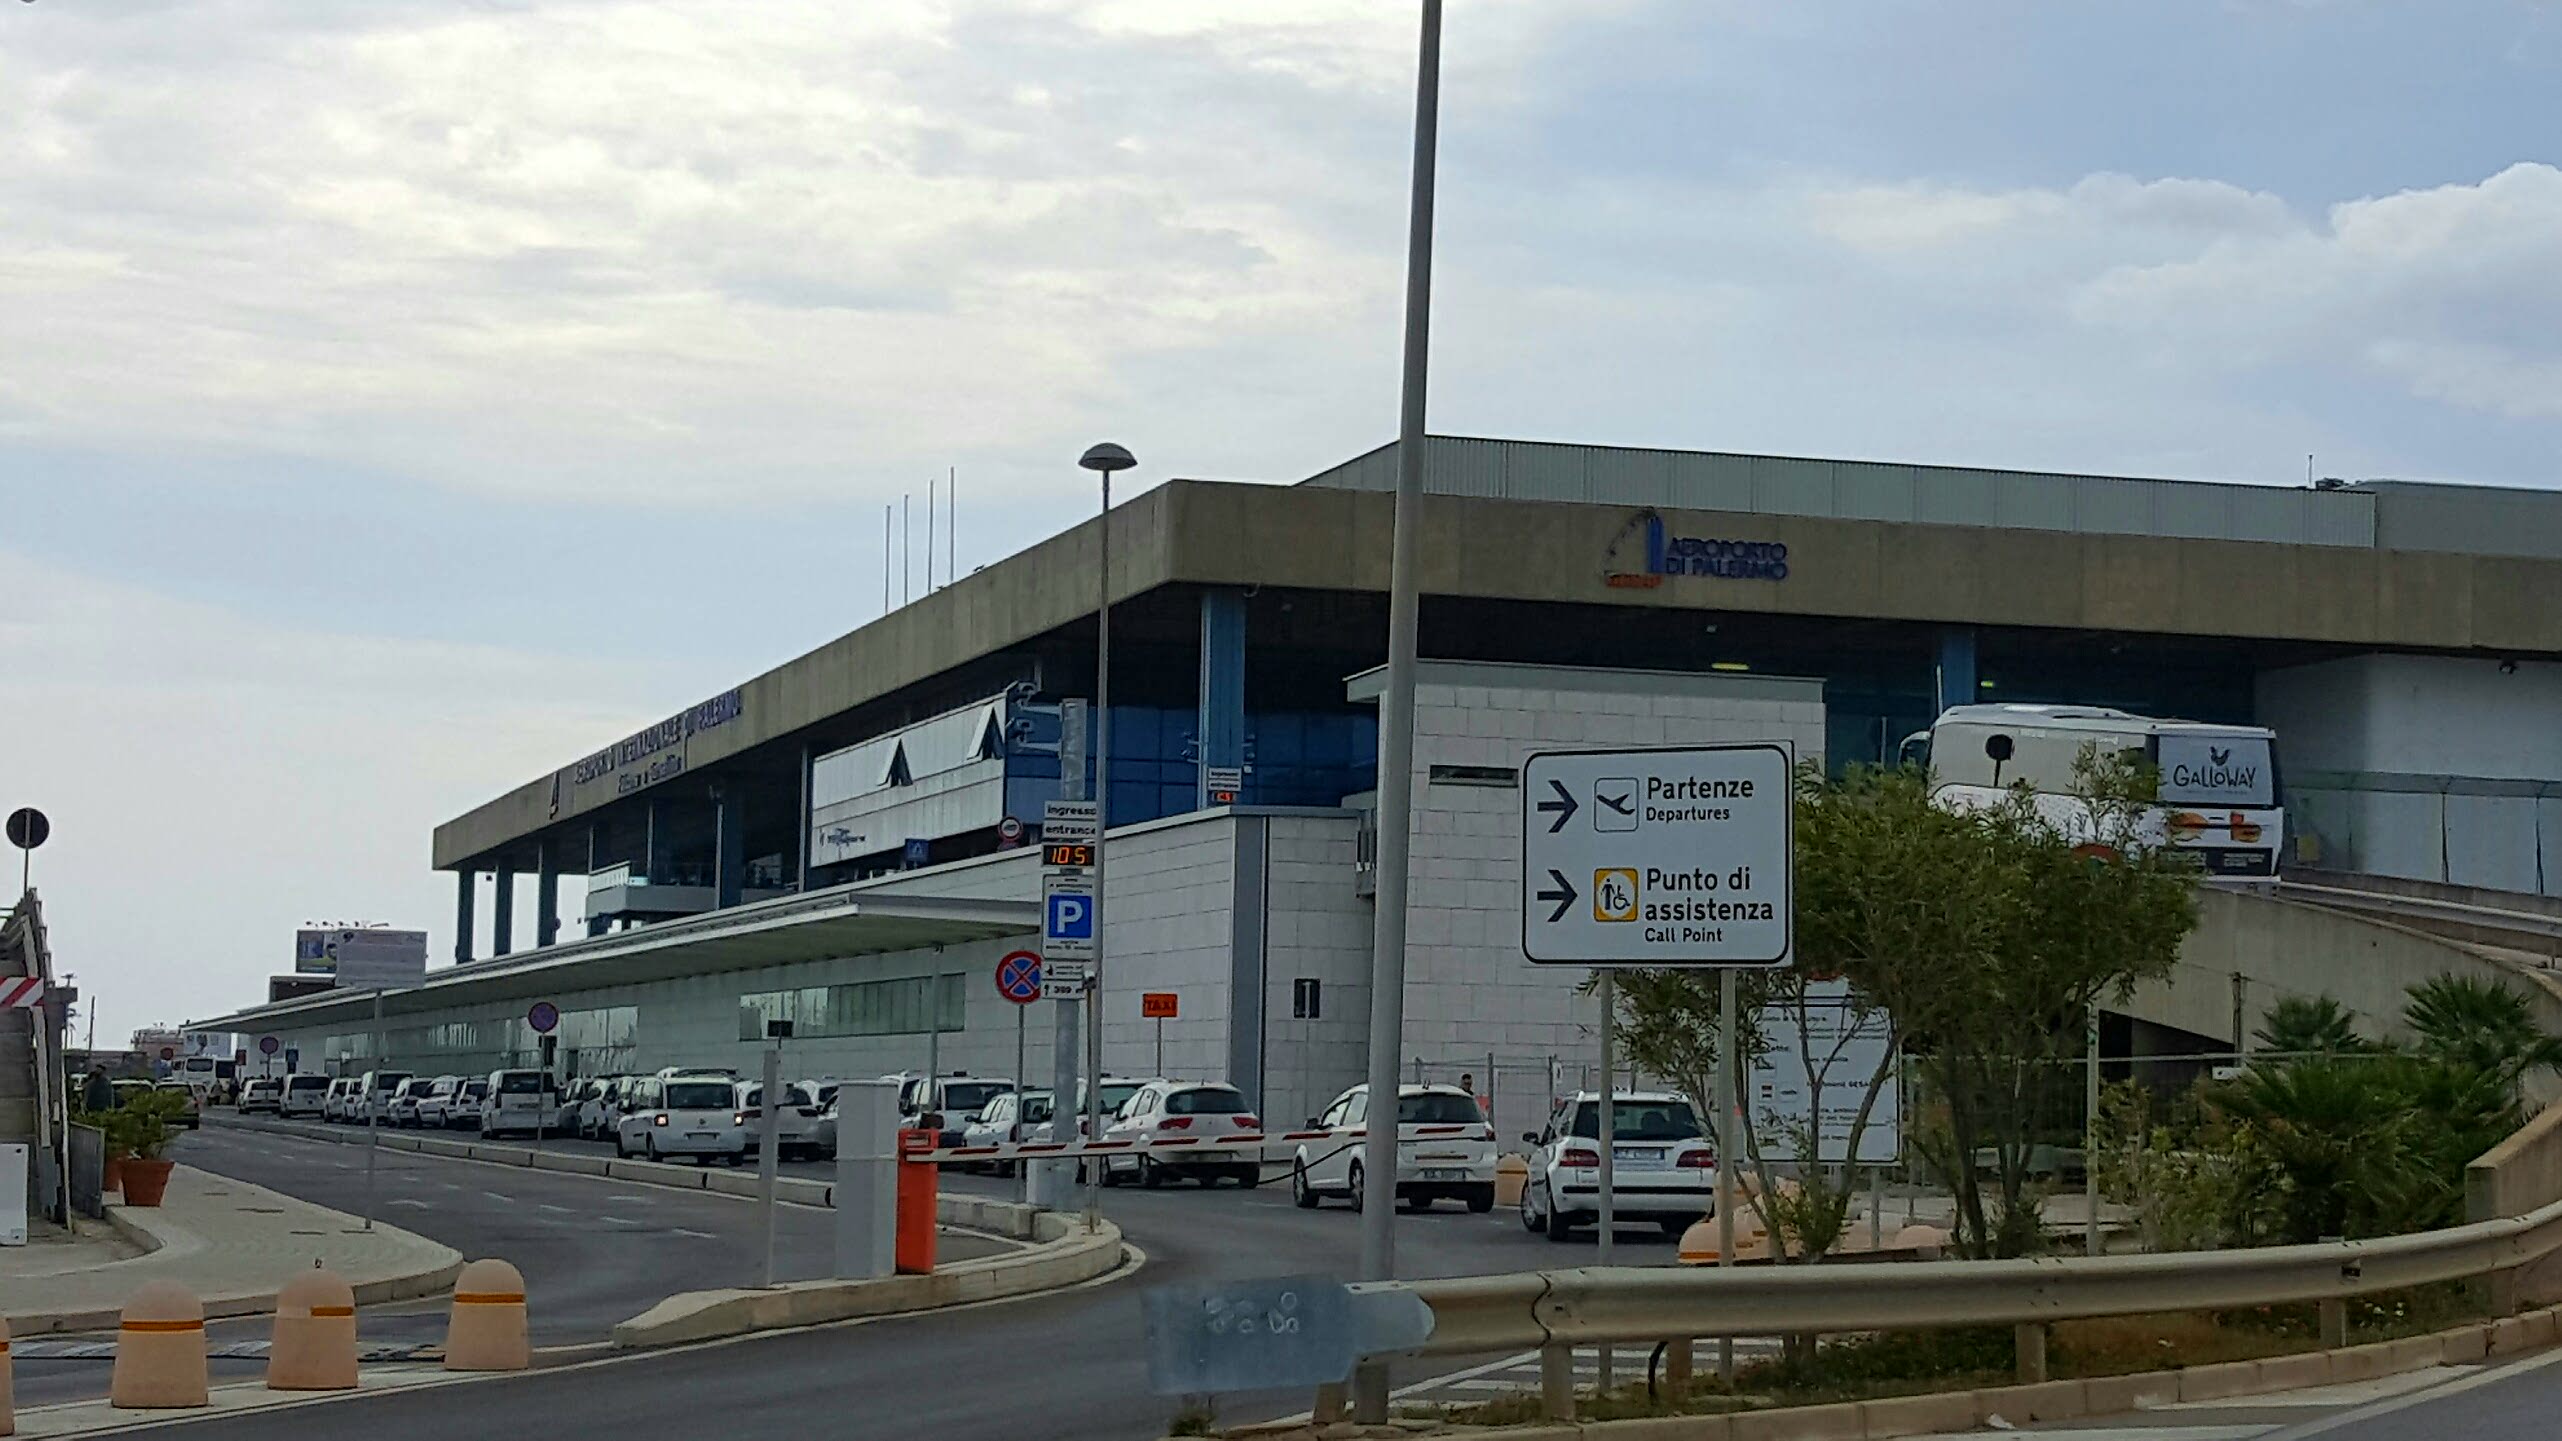 Международные аэропорты сицилии: названия и список аэропортов